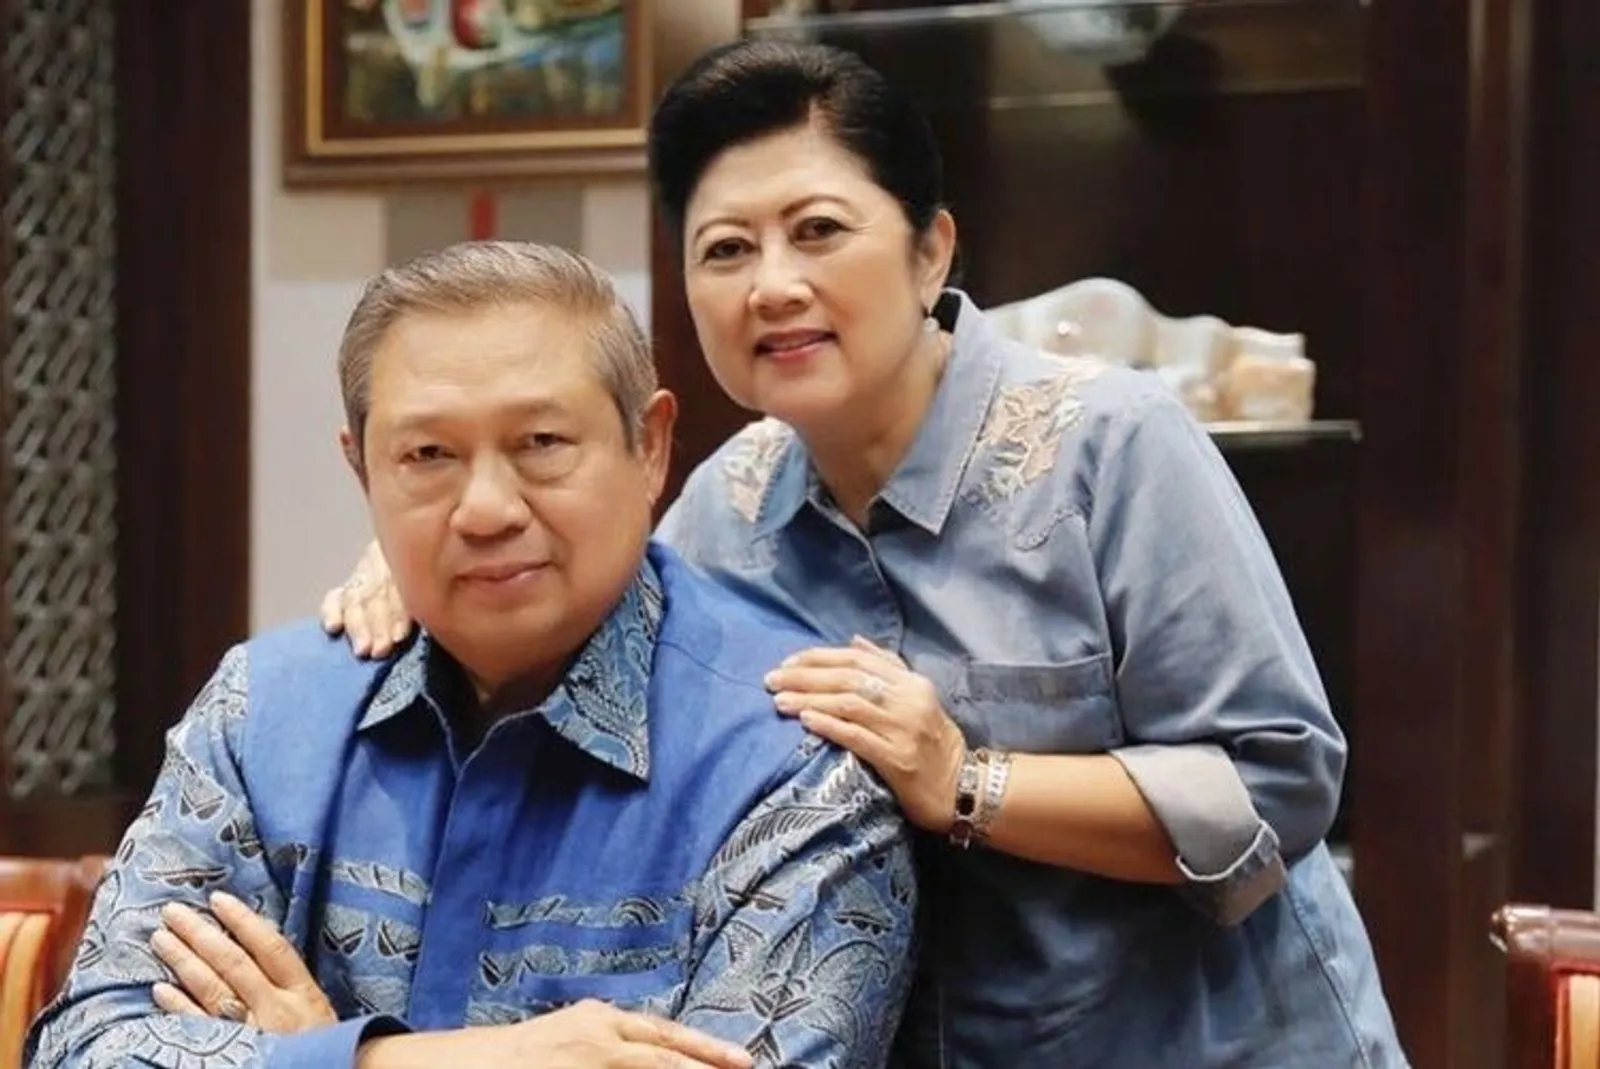 Kisah Cinta SBY dan Ani Yudhoyono, Buktikan Setia Saat Suka dan Duka